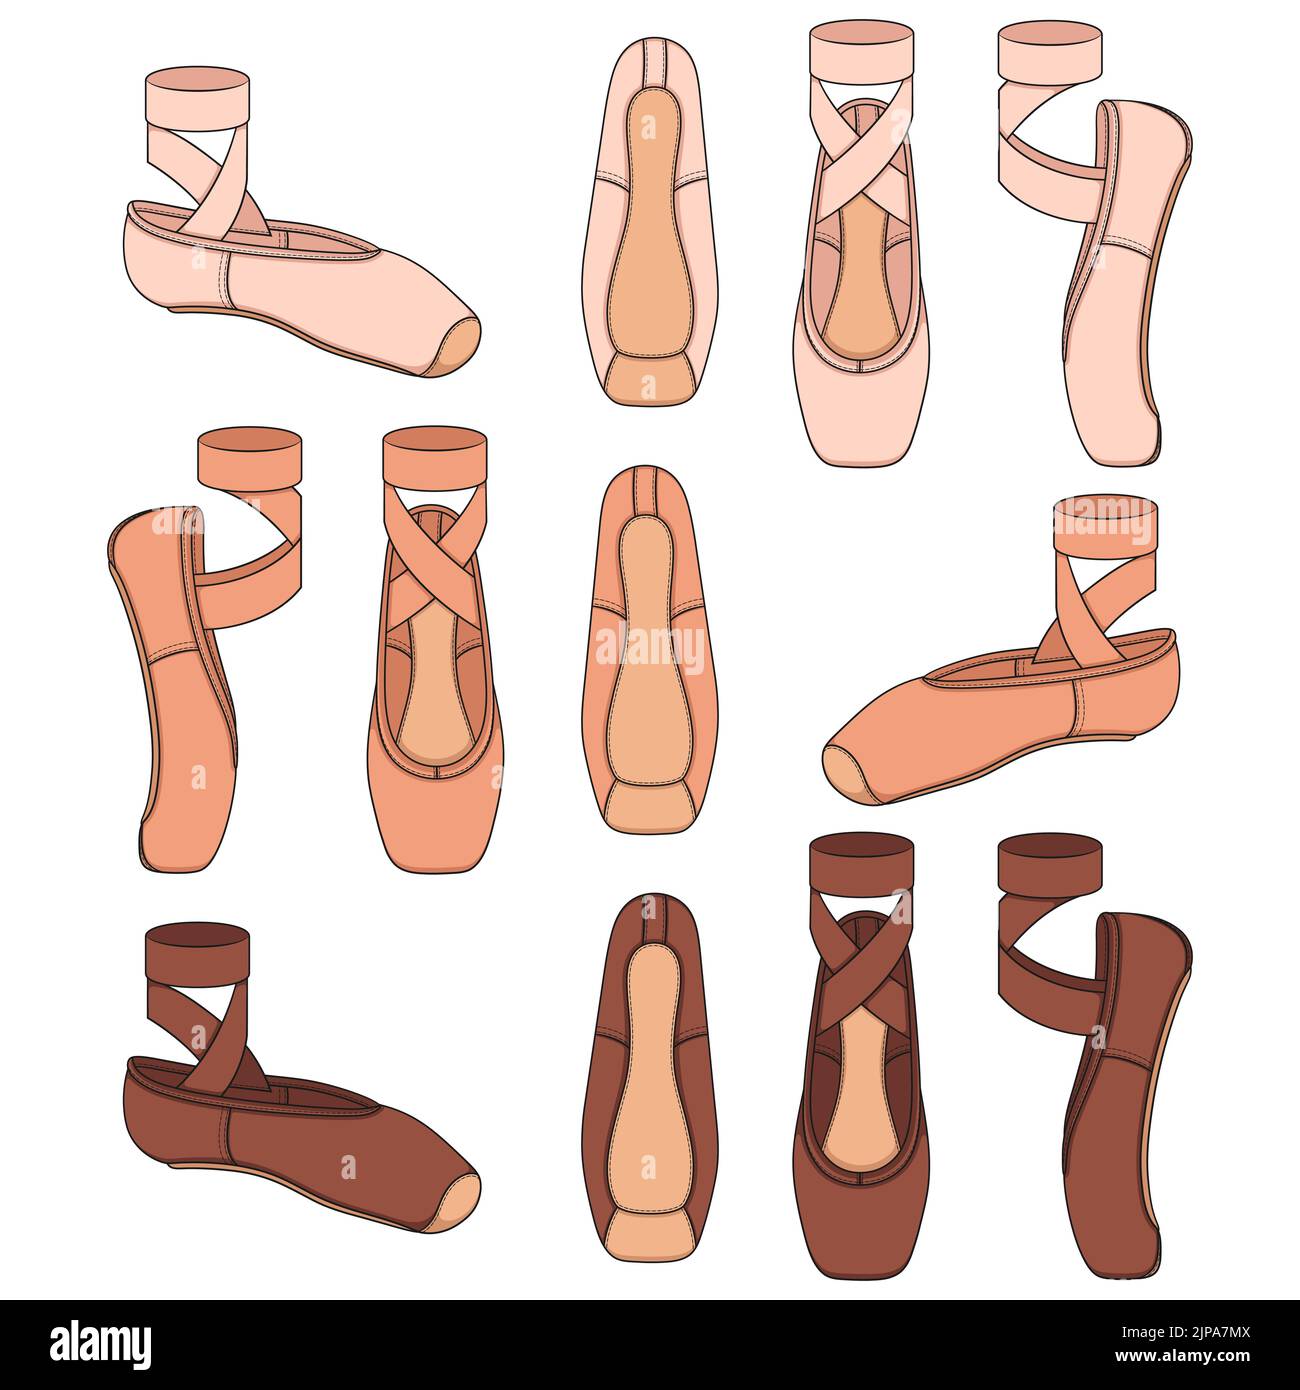 Set mit farbigen Illustrationen mit spitzenschuhen, Ballettschuhen. Isolierte Vektorobjekte auf weißem Hintergrund. Stock Vektor